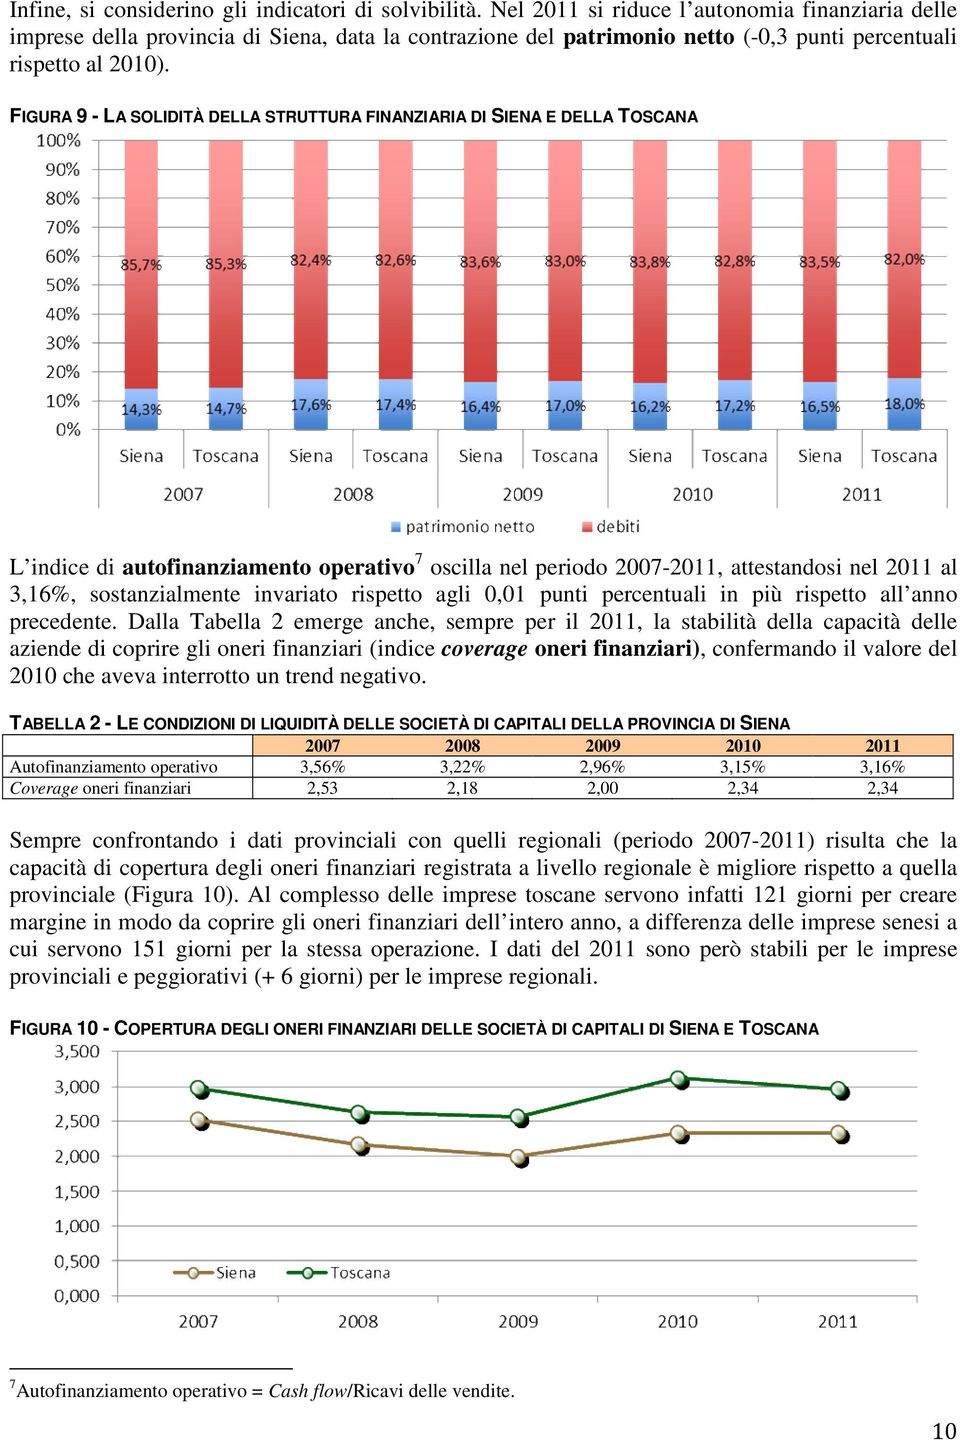 FIGURA 9 - LA SOLIDITÀ DELLA STRUTTURA FINANZIARIA DI SIENA E DELLA TOSCANA L indice di autofinanziamento operativo 7 oscilla nel periodo 2007-2011, attestandosi nel 2011 al 3,16%, sostanzialmente